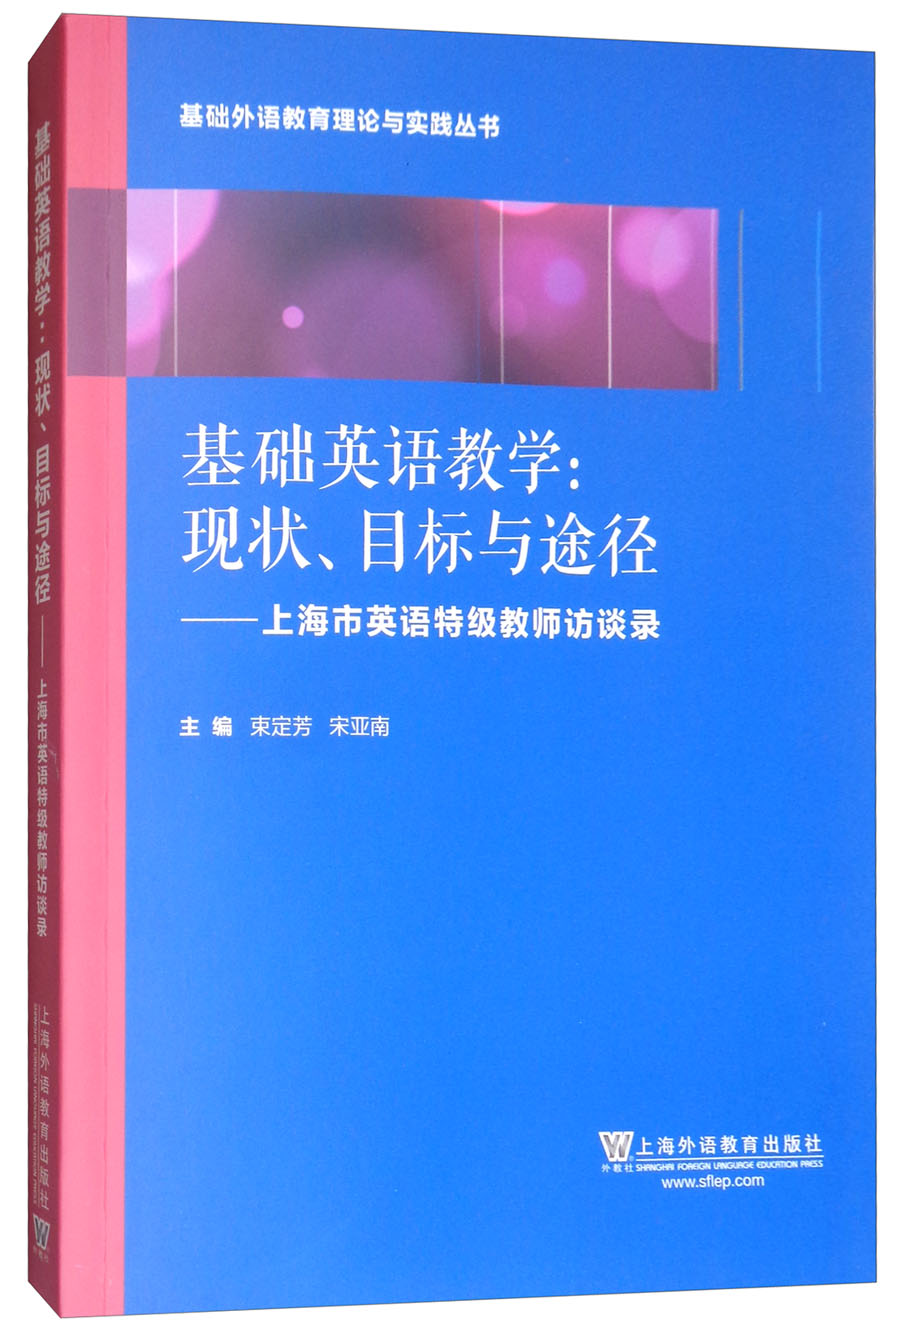 基础外语教育理论与实践丛书·基础英语教学·现状、目标与途径：上海英语特级教师访谈录 mobi格式下载